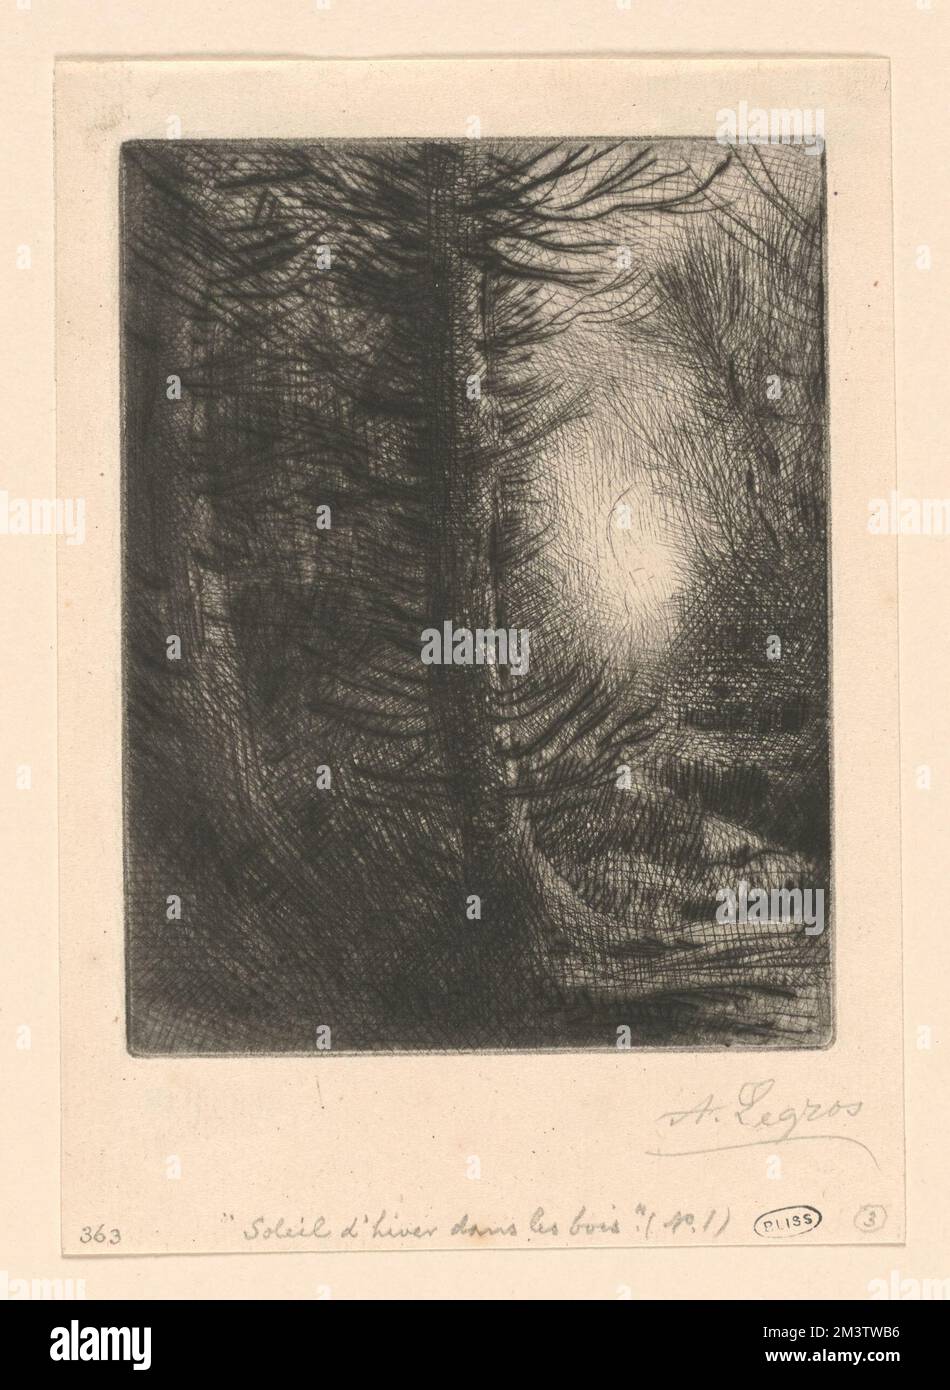 Soleil d'hiver dans le bois (1st plate) , Forests, Alphonse Legros (1837-1911) Stock Photo